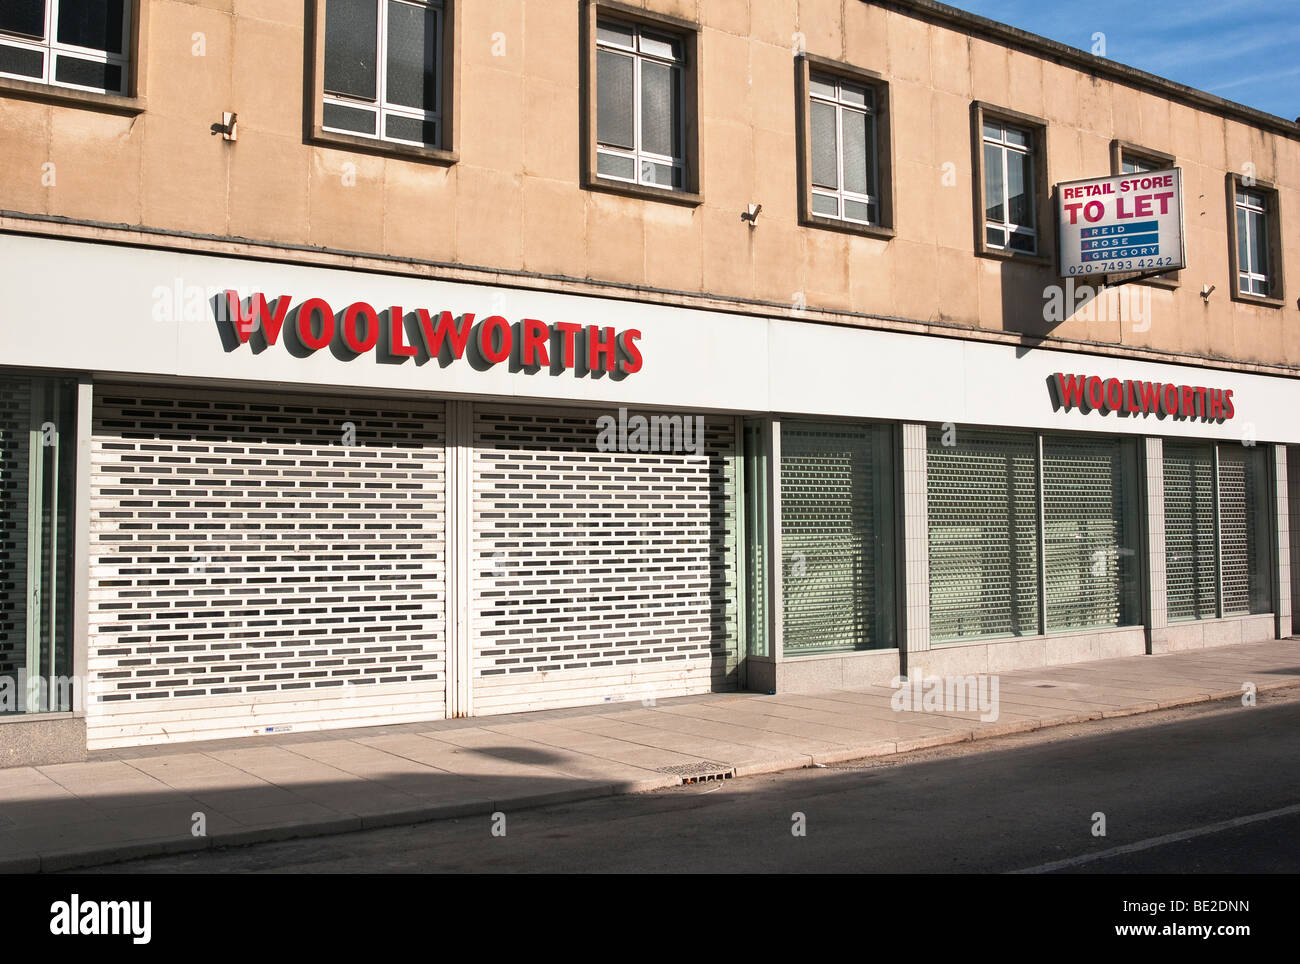 Ancien magasin Woolworths unlet encore après 9 mois sur le marché. Fin d'une époque Banque D'Images